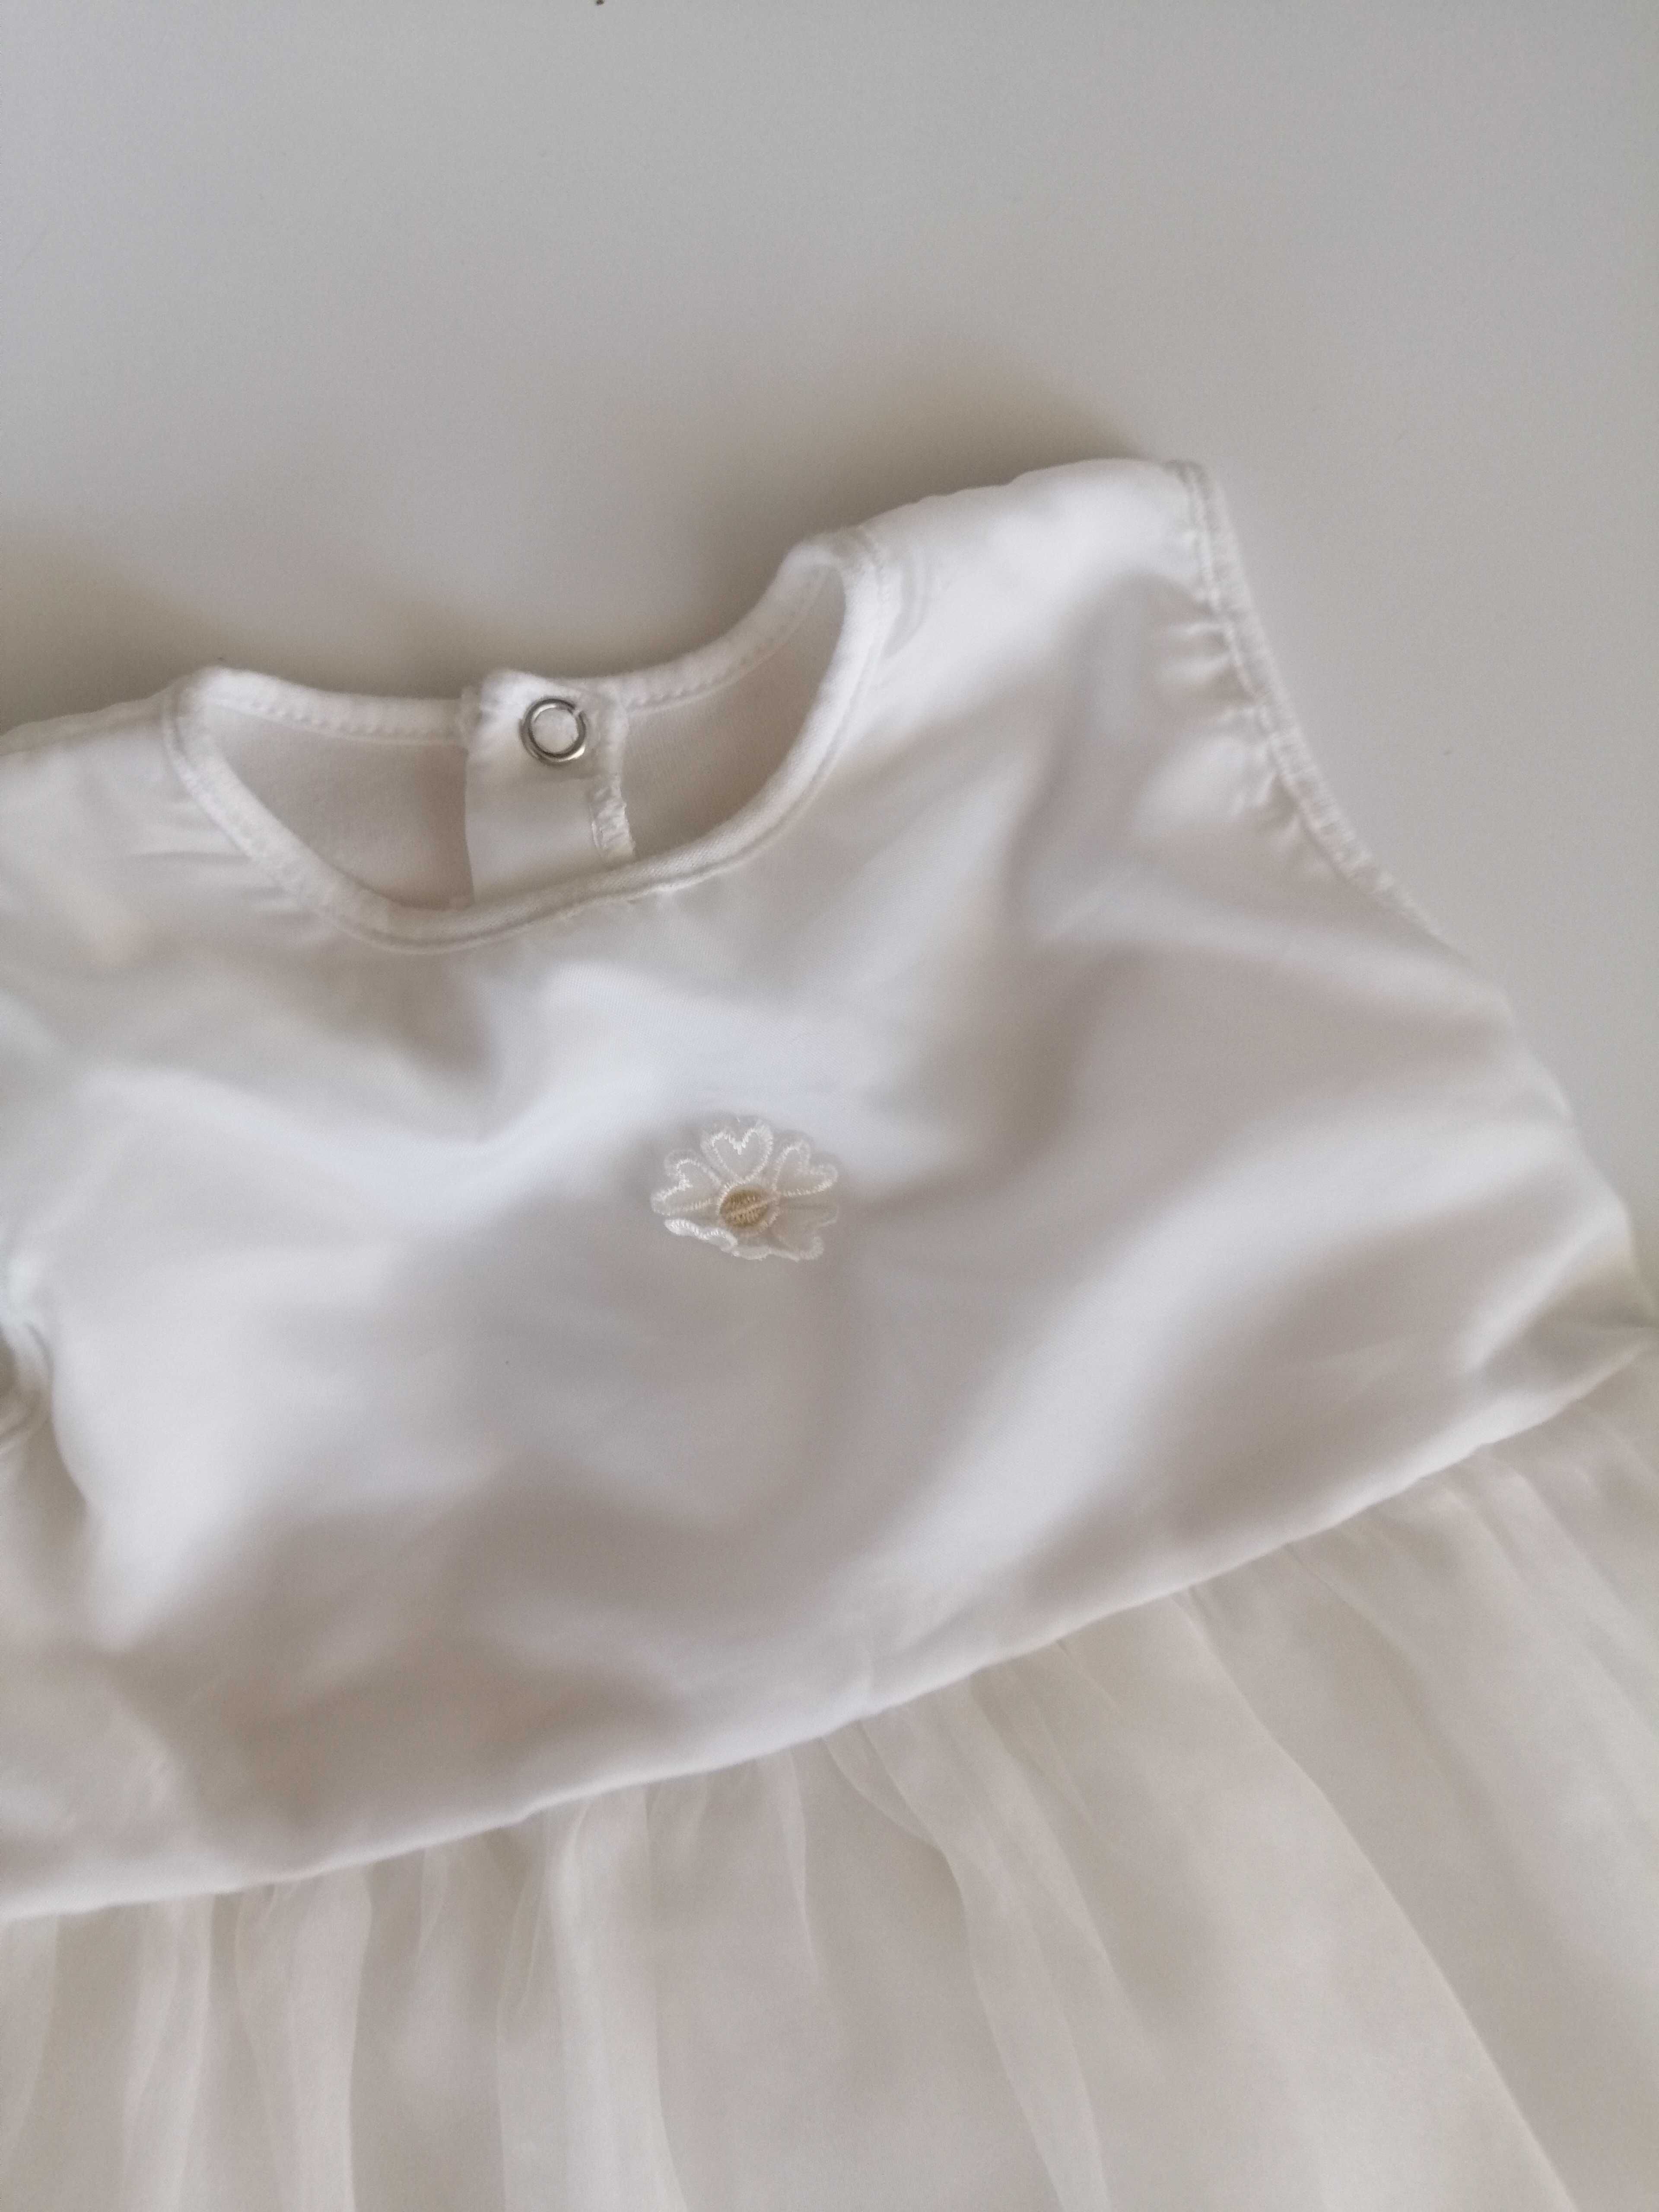 biała prosta skromna sukienka kremowa ecru na chrzciny 68-74 6-9mies